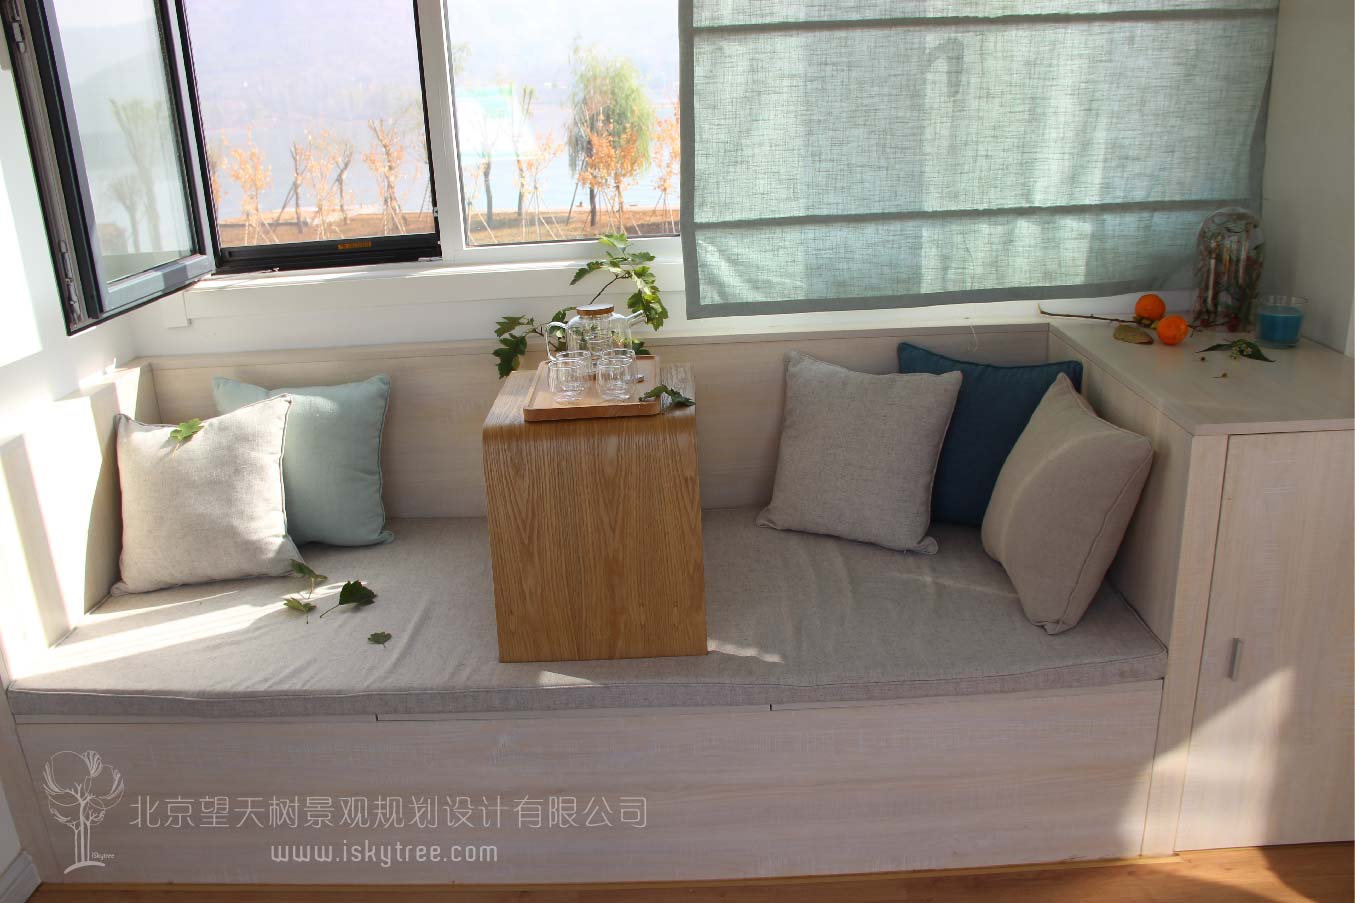 20尺集装箱改造的“双燕归”主题客房室内装饰设计